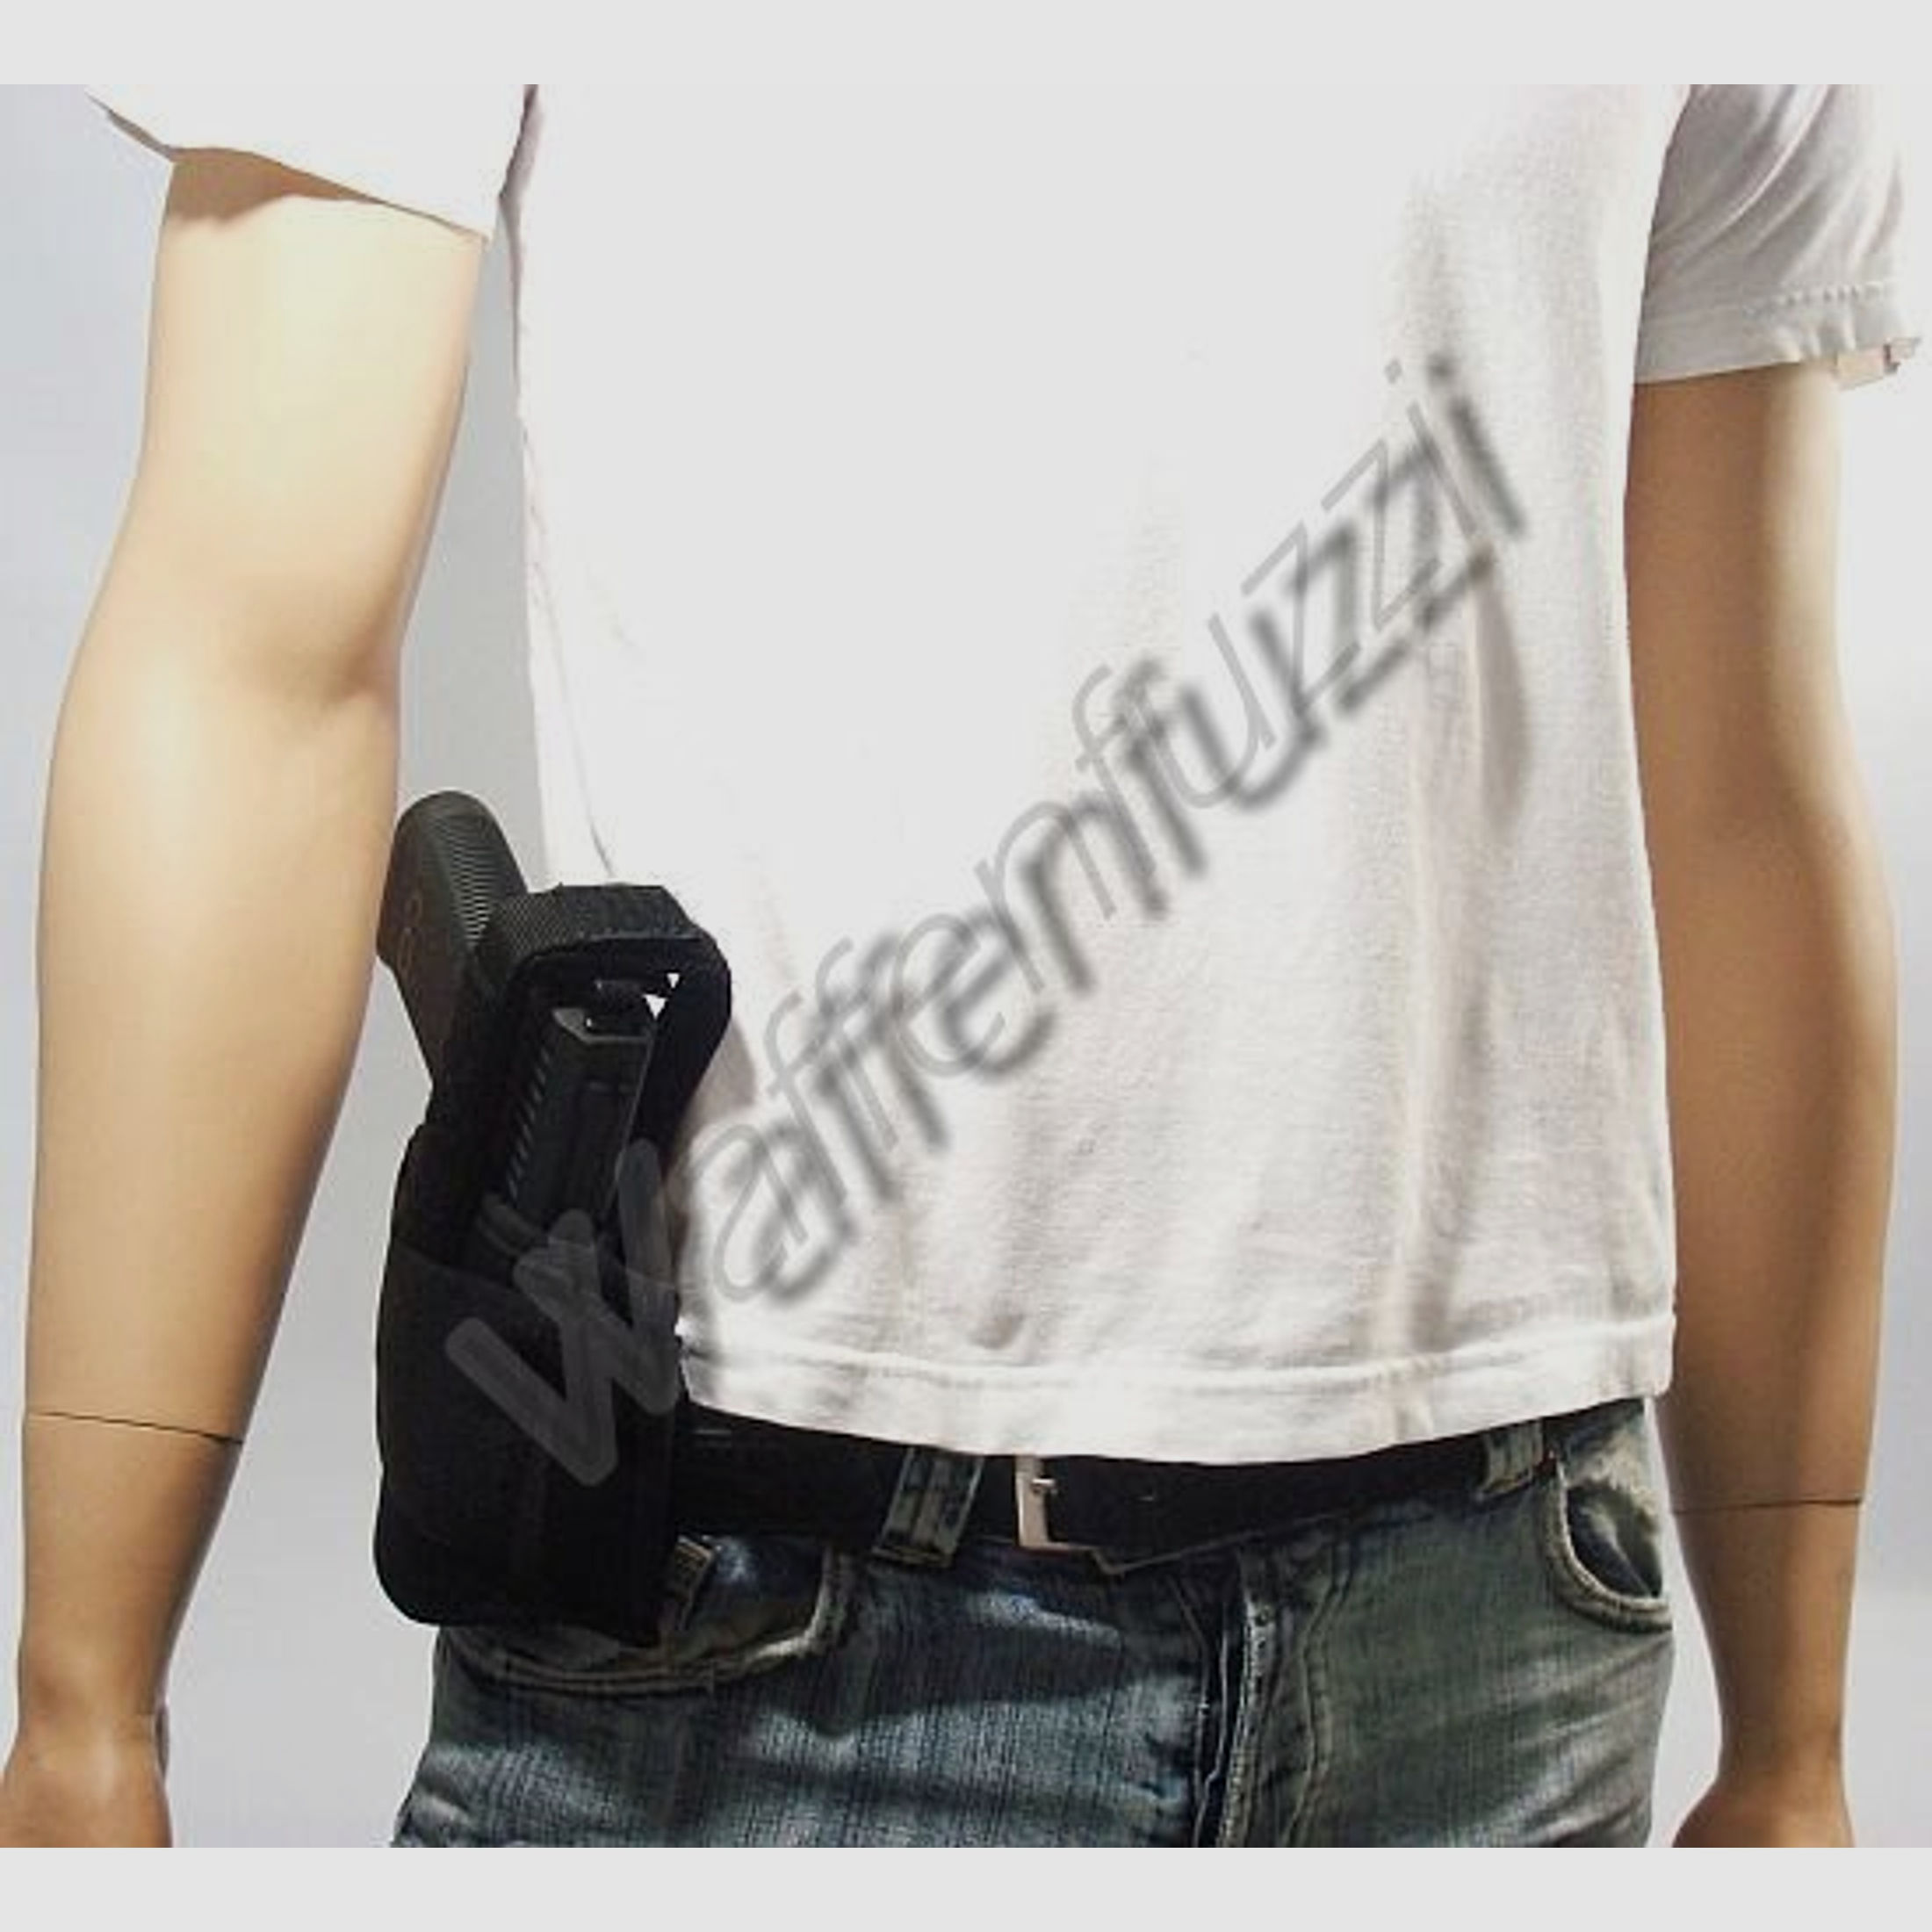 Multifunktionales Gürtelholster aus Nylon für große Pistolen